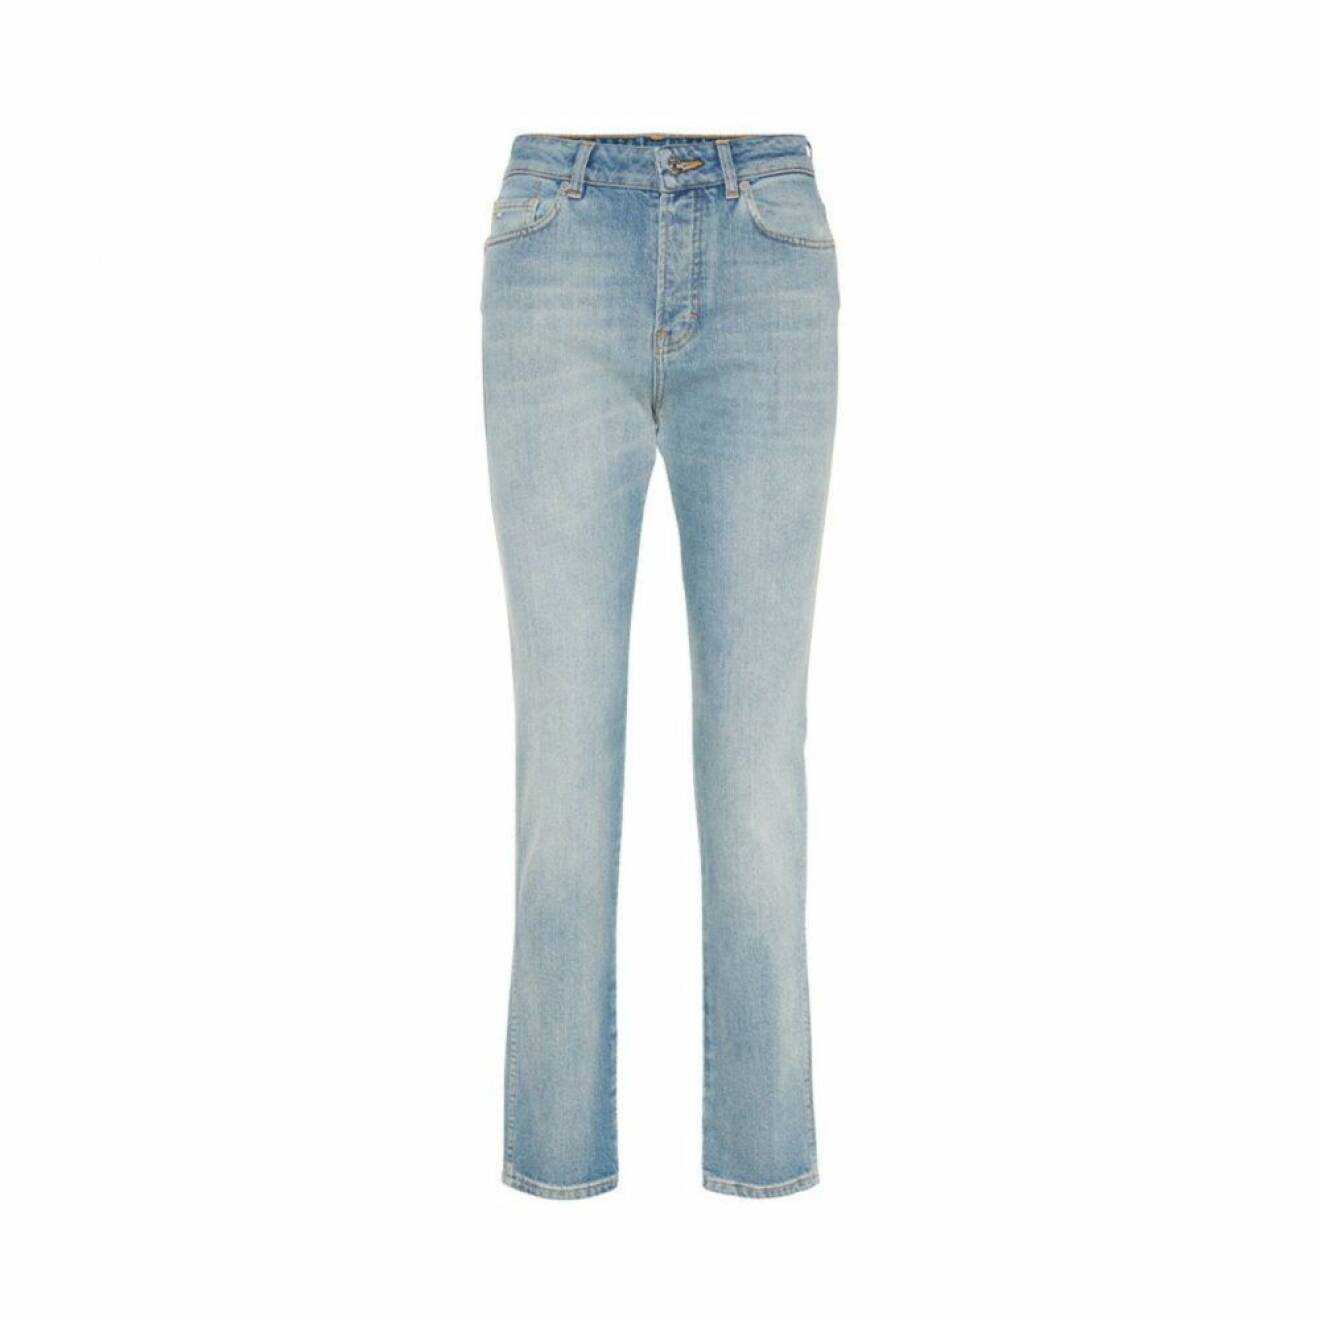 Stilfulla och klassiska jeans från JLindeberg.